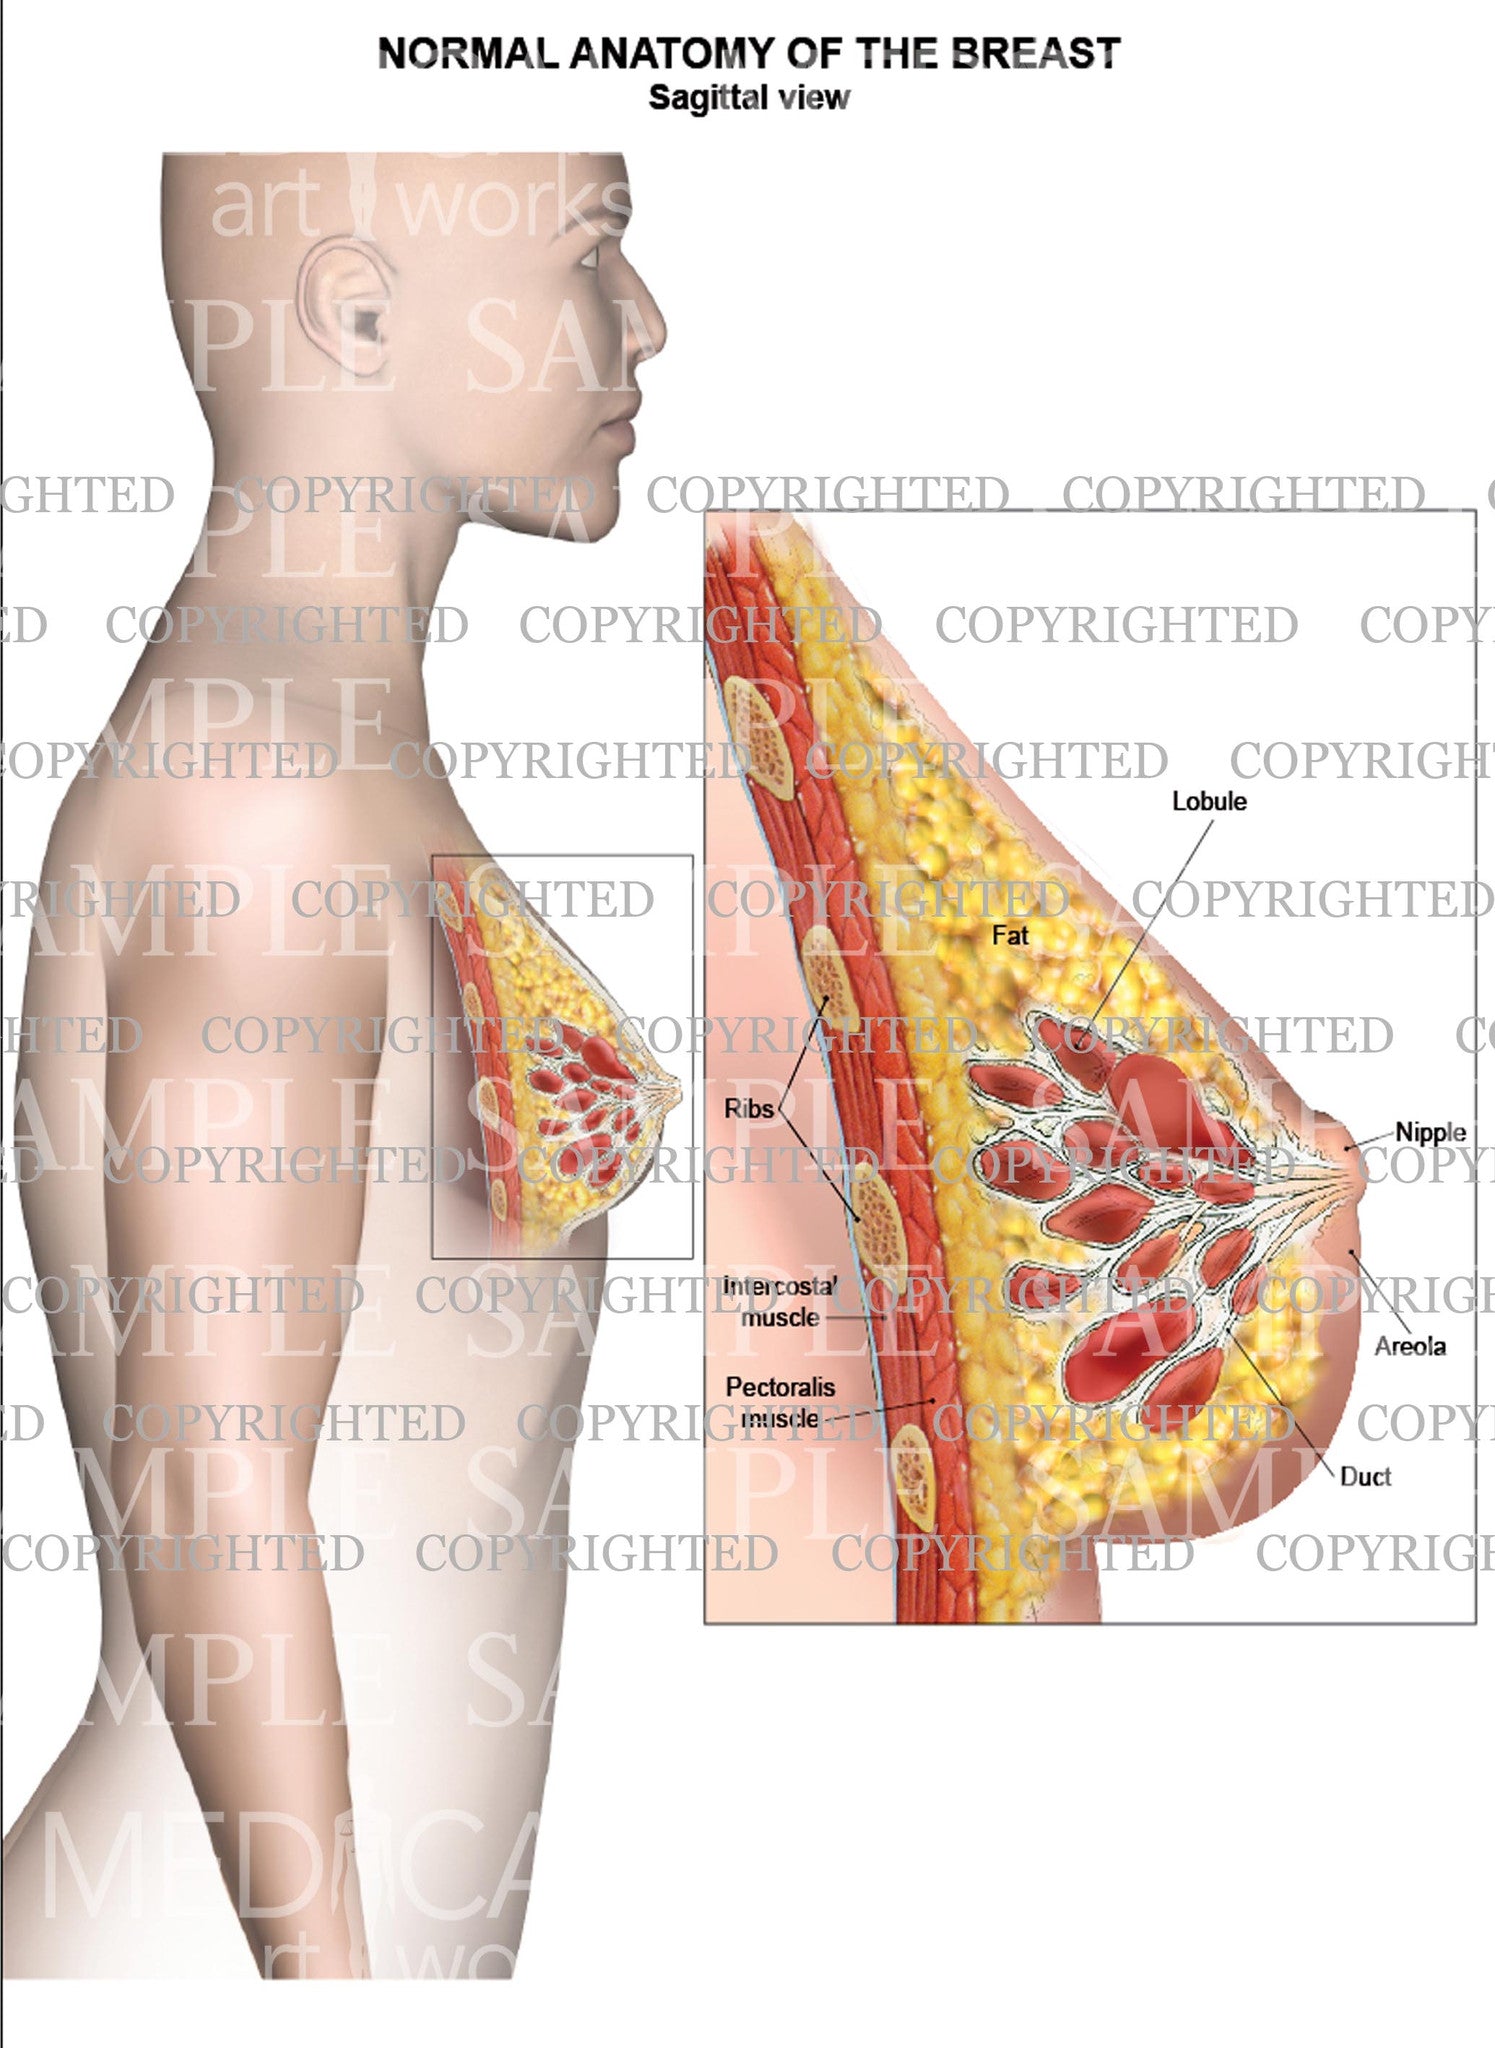 Normal breast anatomy - sagittal view – Medical Art Works